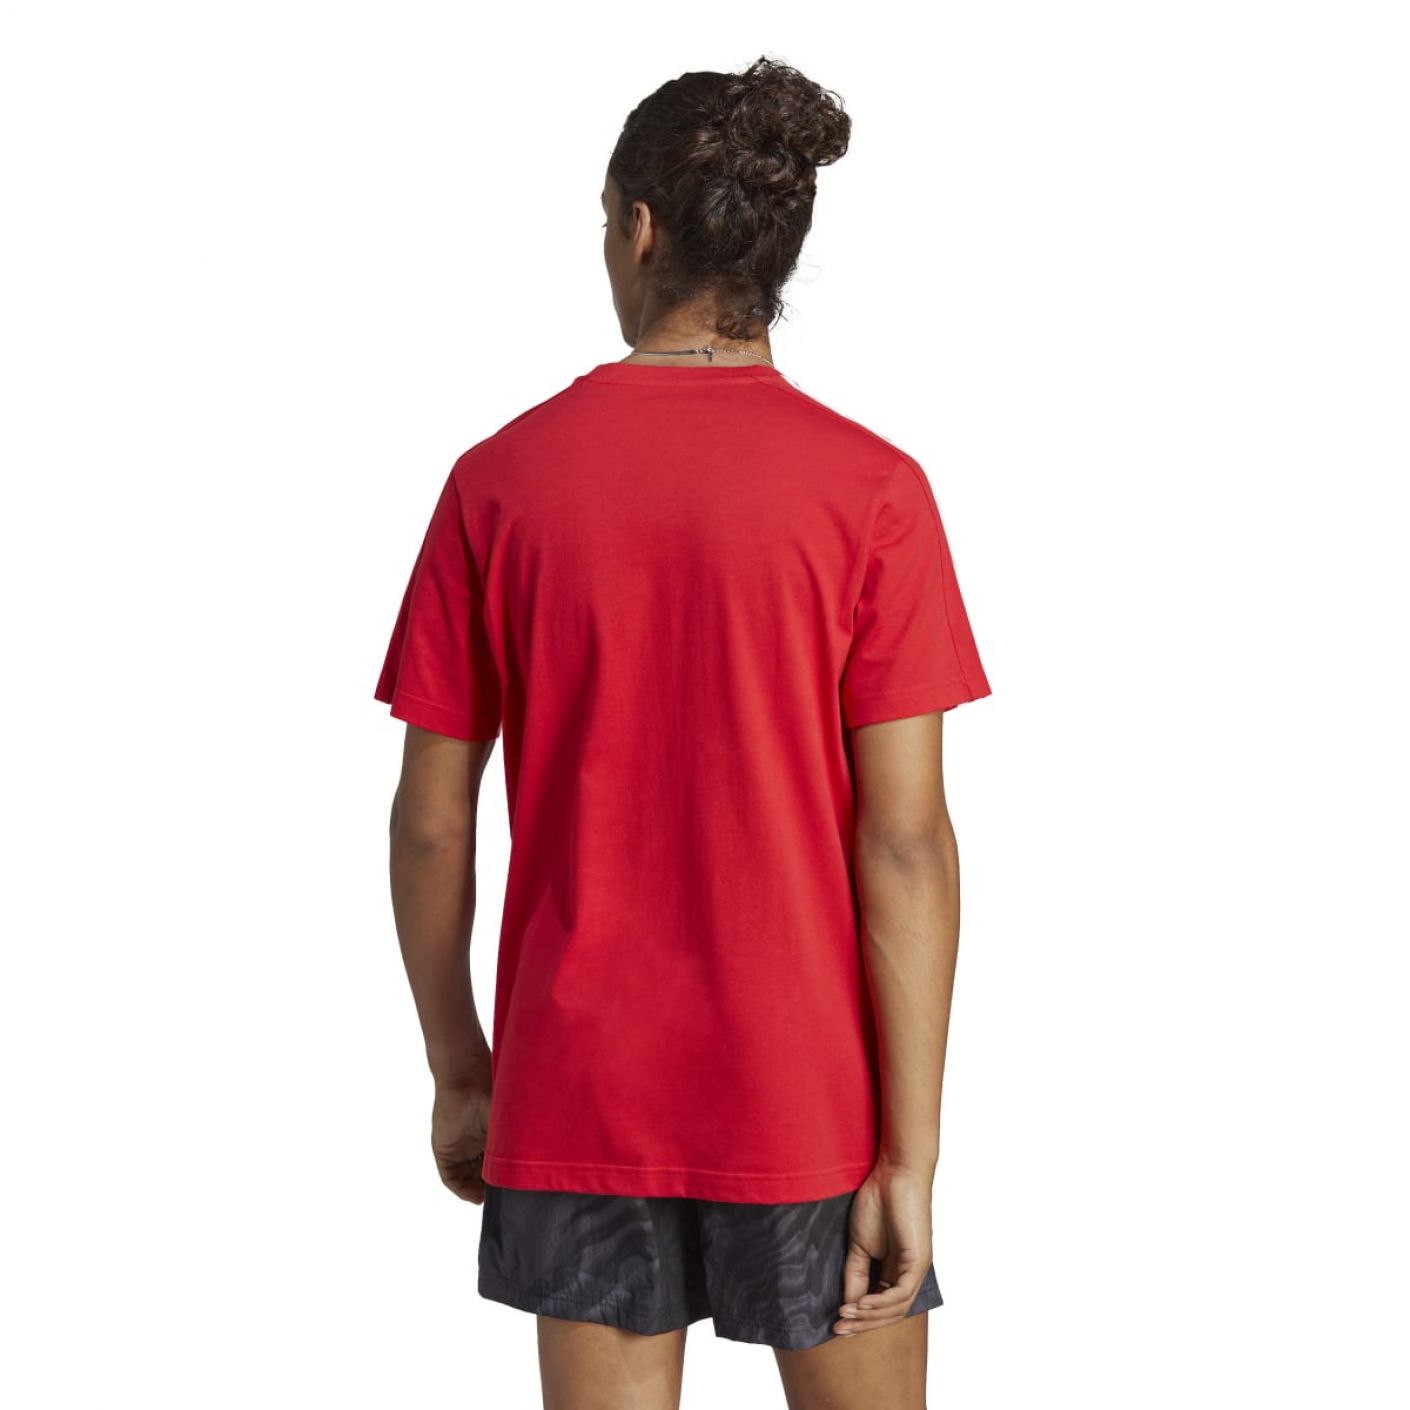 Adidas T-Shirt 3Stripes Rossa da Uomo